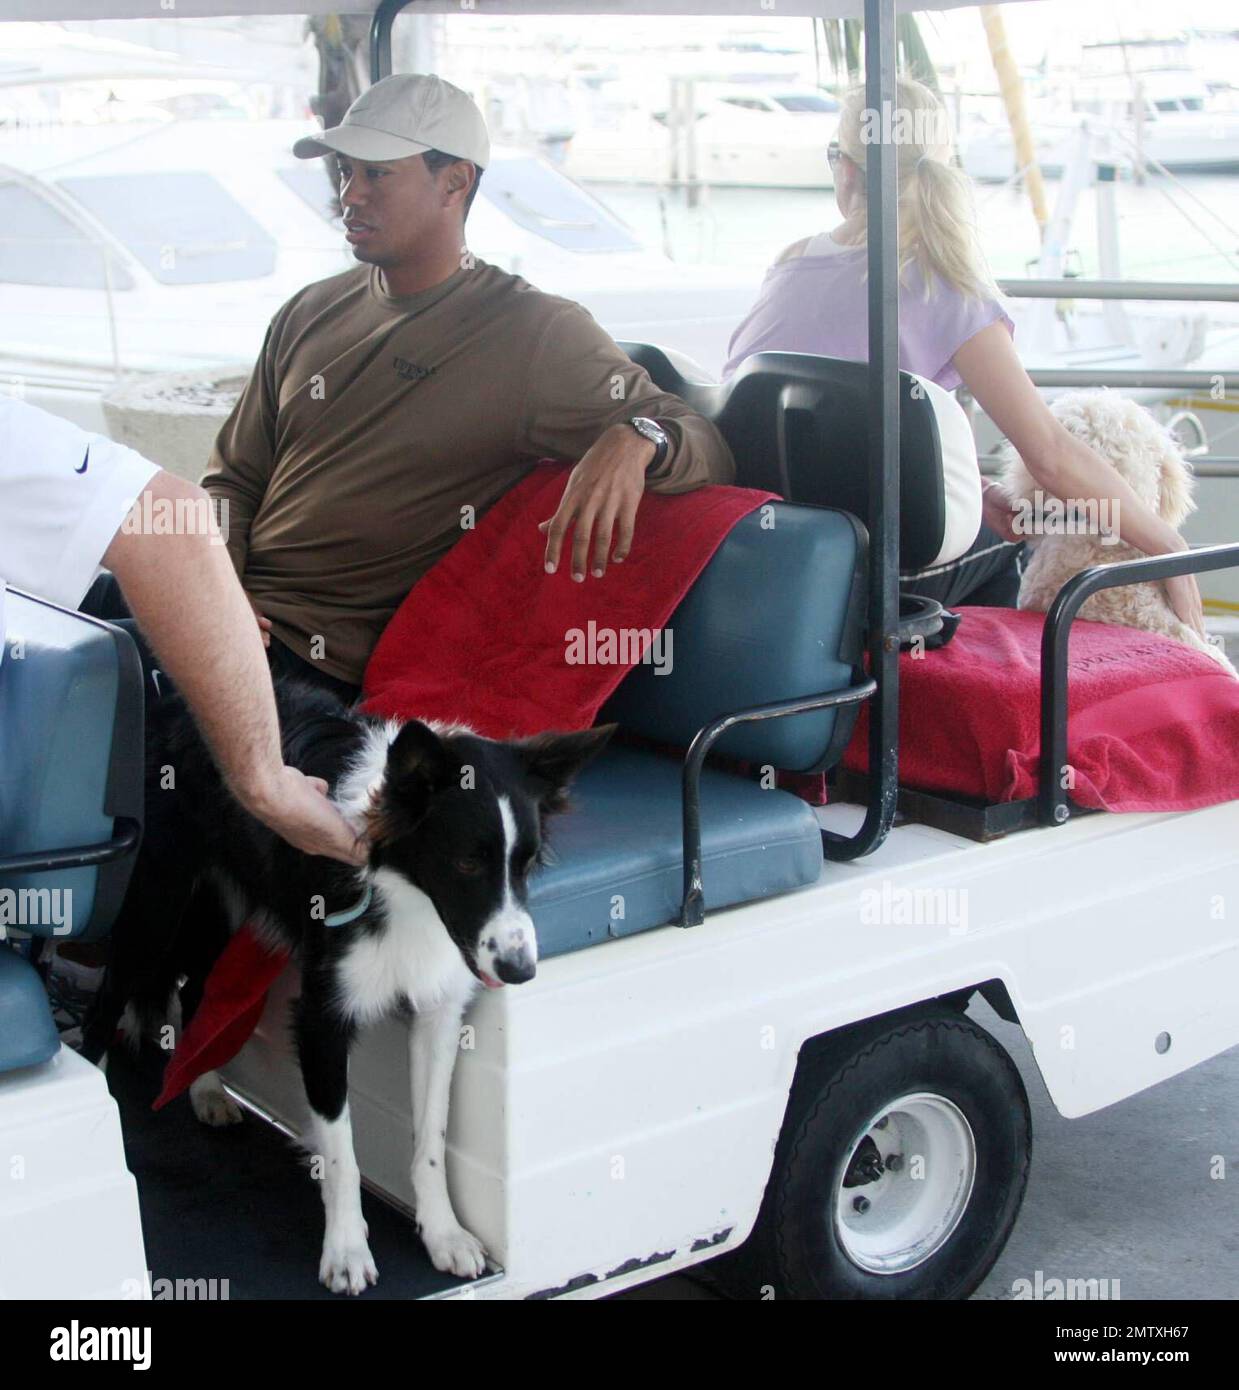 Exclusif !! La superstar du golf Tiger Woods et sa femme Elin font une pause de leur yacht « Privacy » pour aller à une salle de sport locale. Même si Elin est enceinte et montre, elle aime toujours s'entraîner et garder la forme. Miami Beach, FL, 3/25/07 Banque D'Images